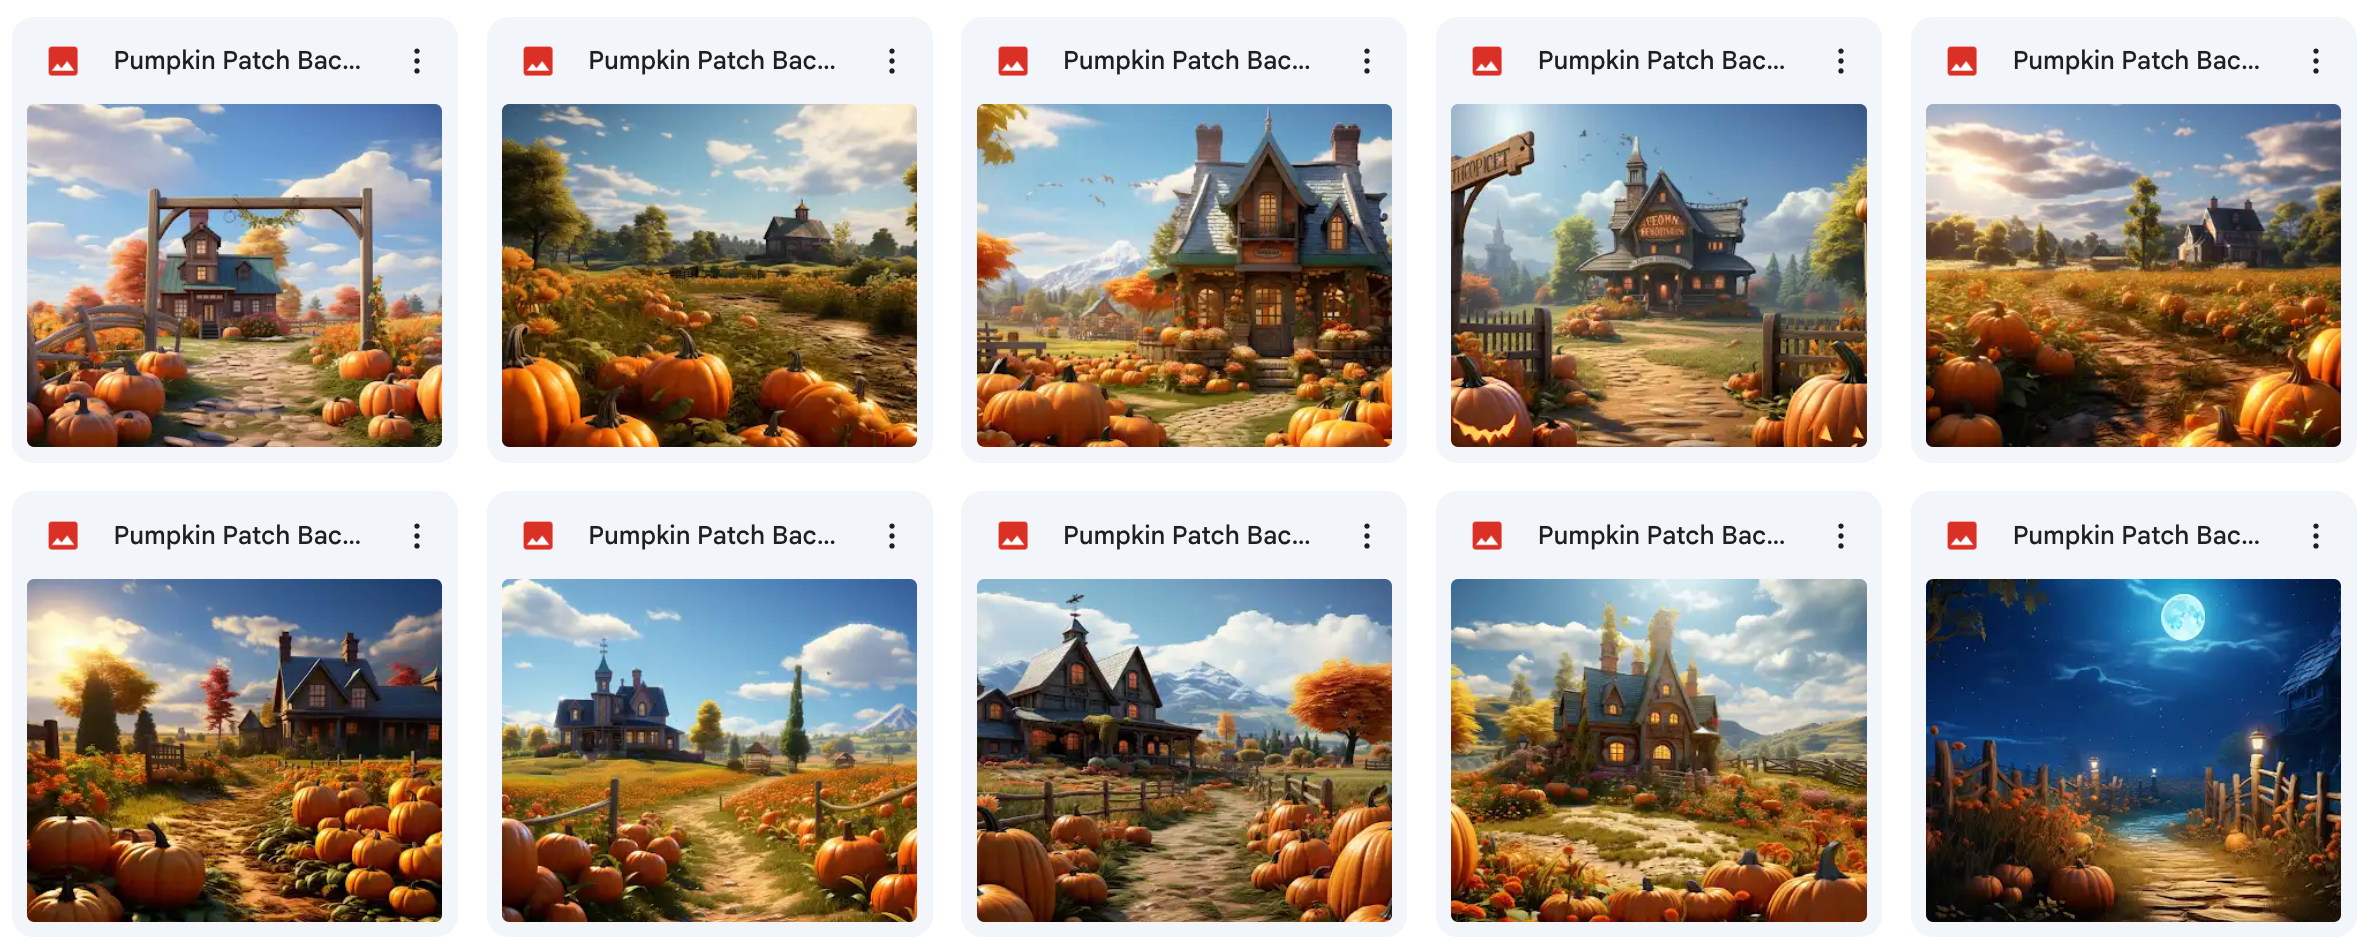 Ultimate Pumpkin Patch Background Bundle - Meg Bitton Productions